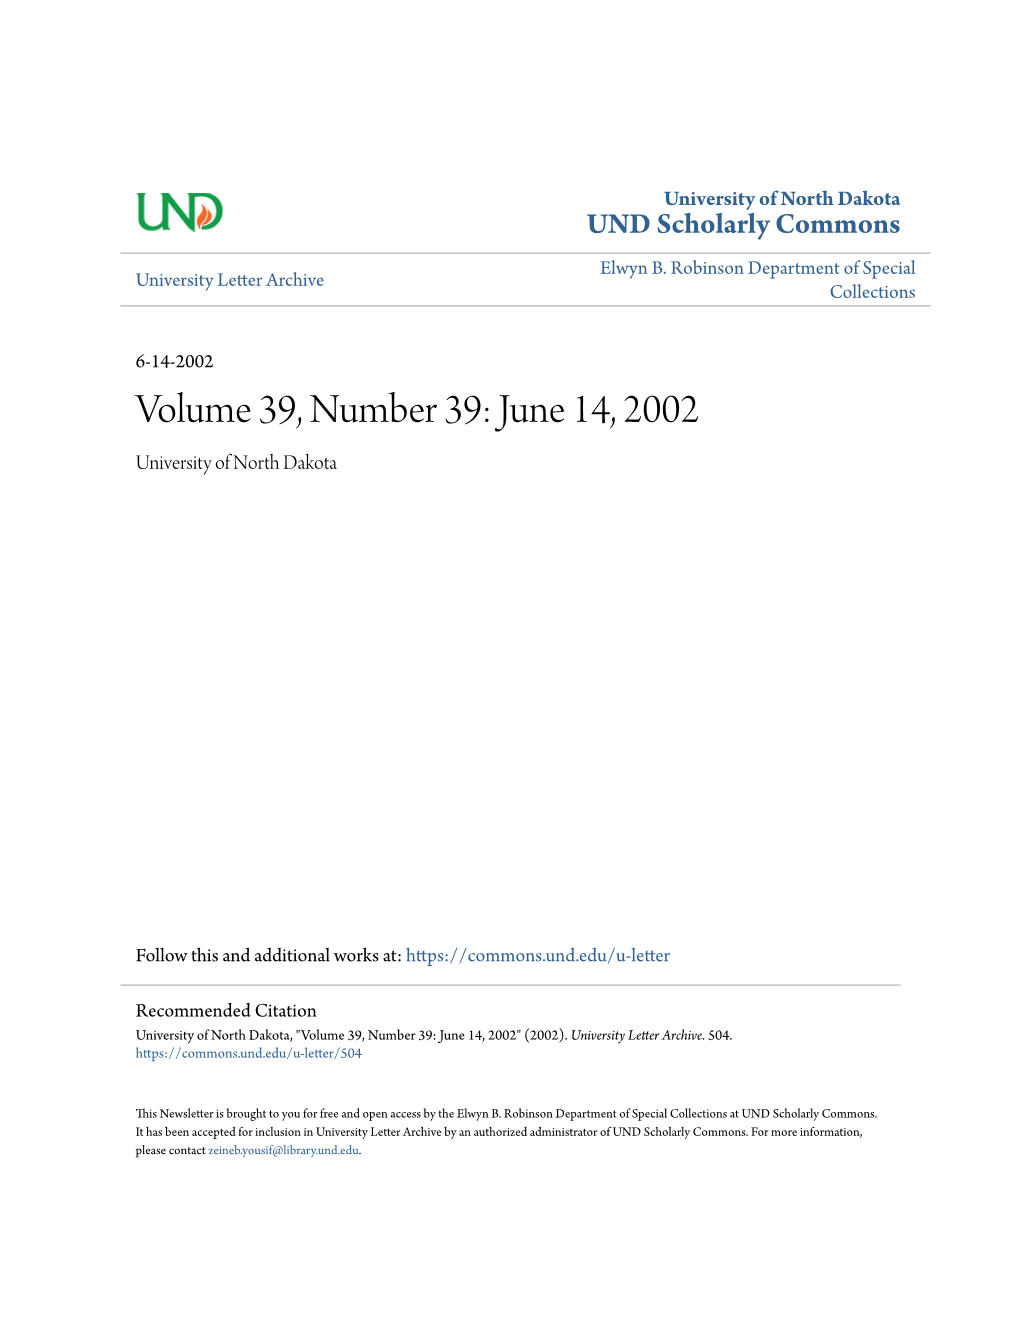 June 14, 2002 University of North Dakota